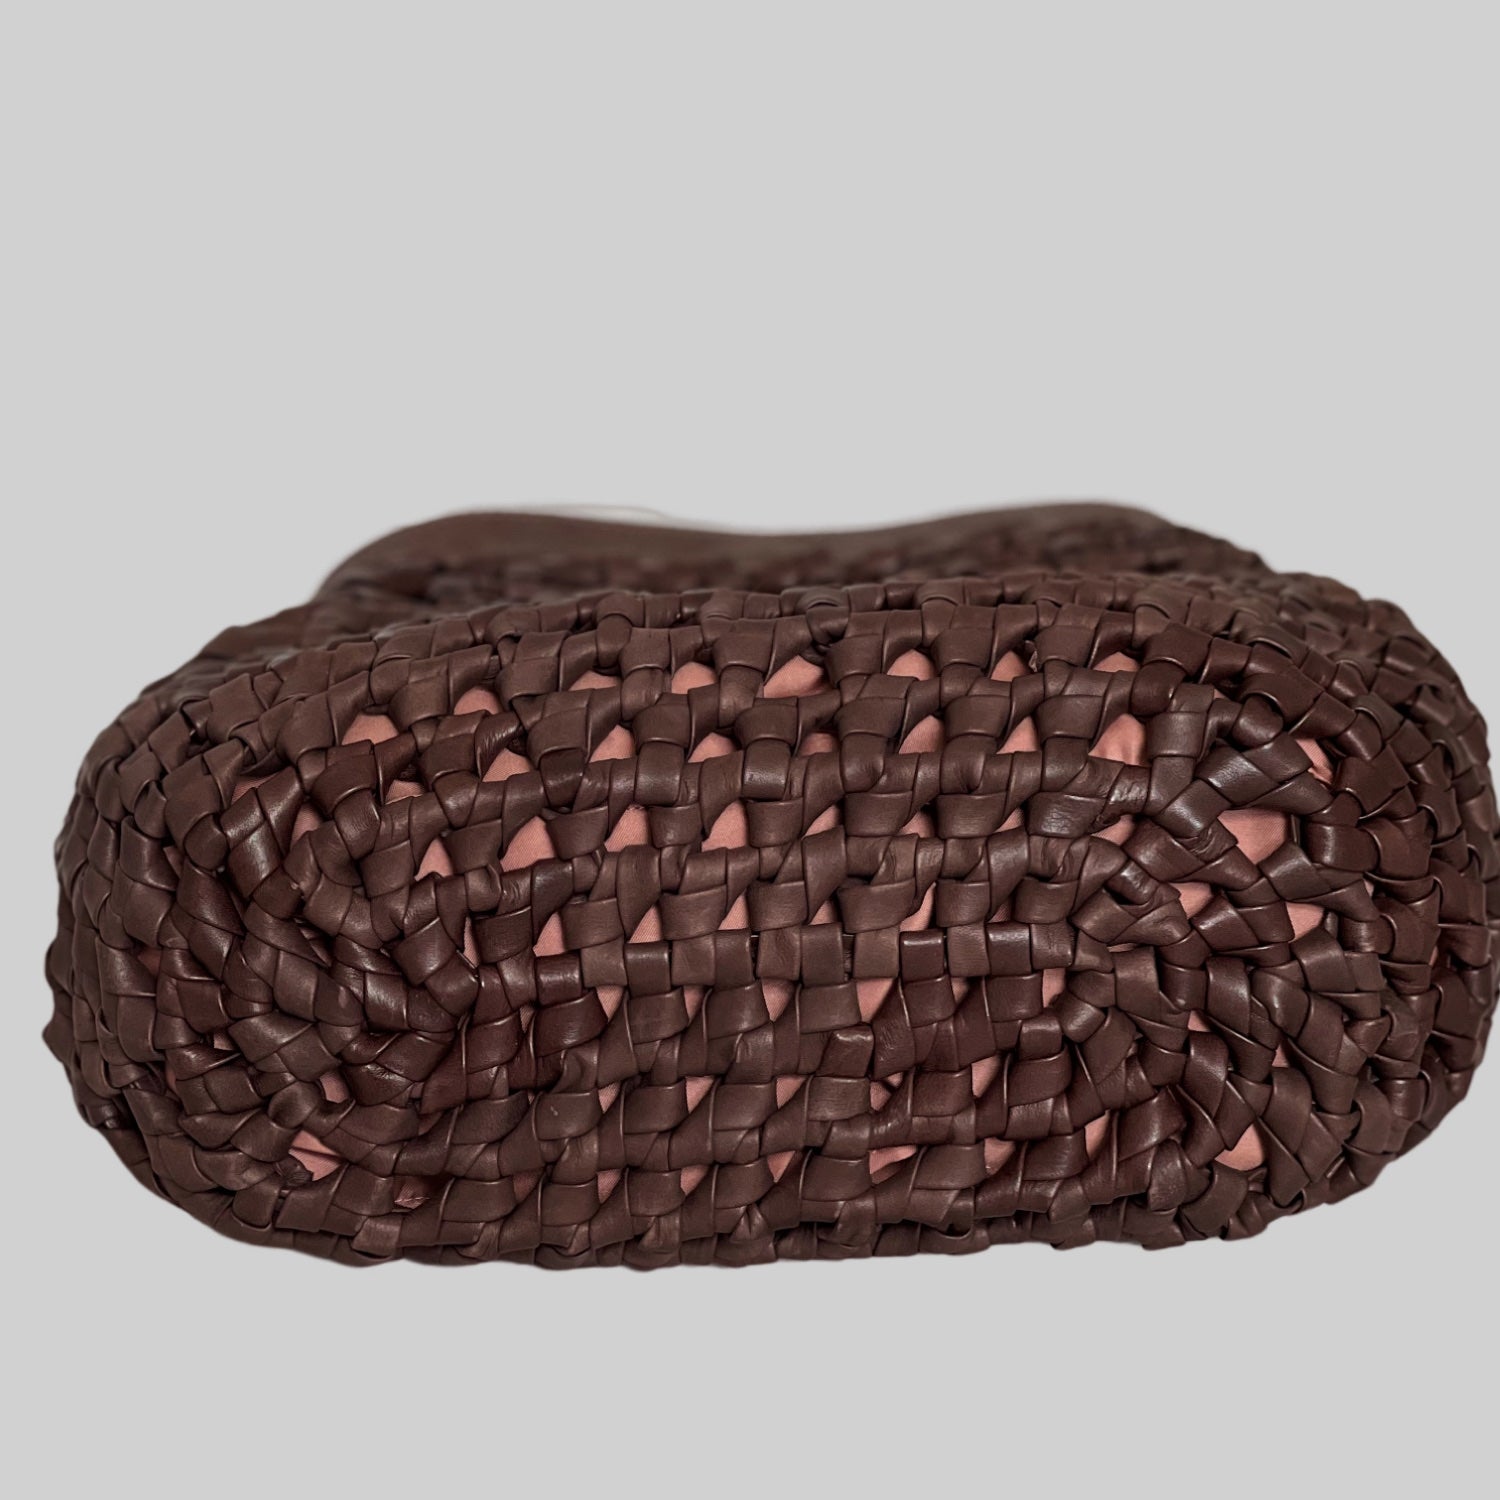 Ribichini Donna-veskens underside viser et intrikat håndflettet mønster i brunt skinn, som gir en tekstur av jevne løkker og knuter. Solid og godt håndverk.